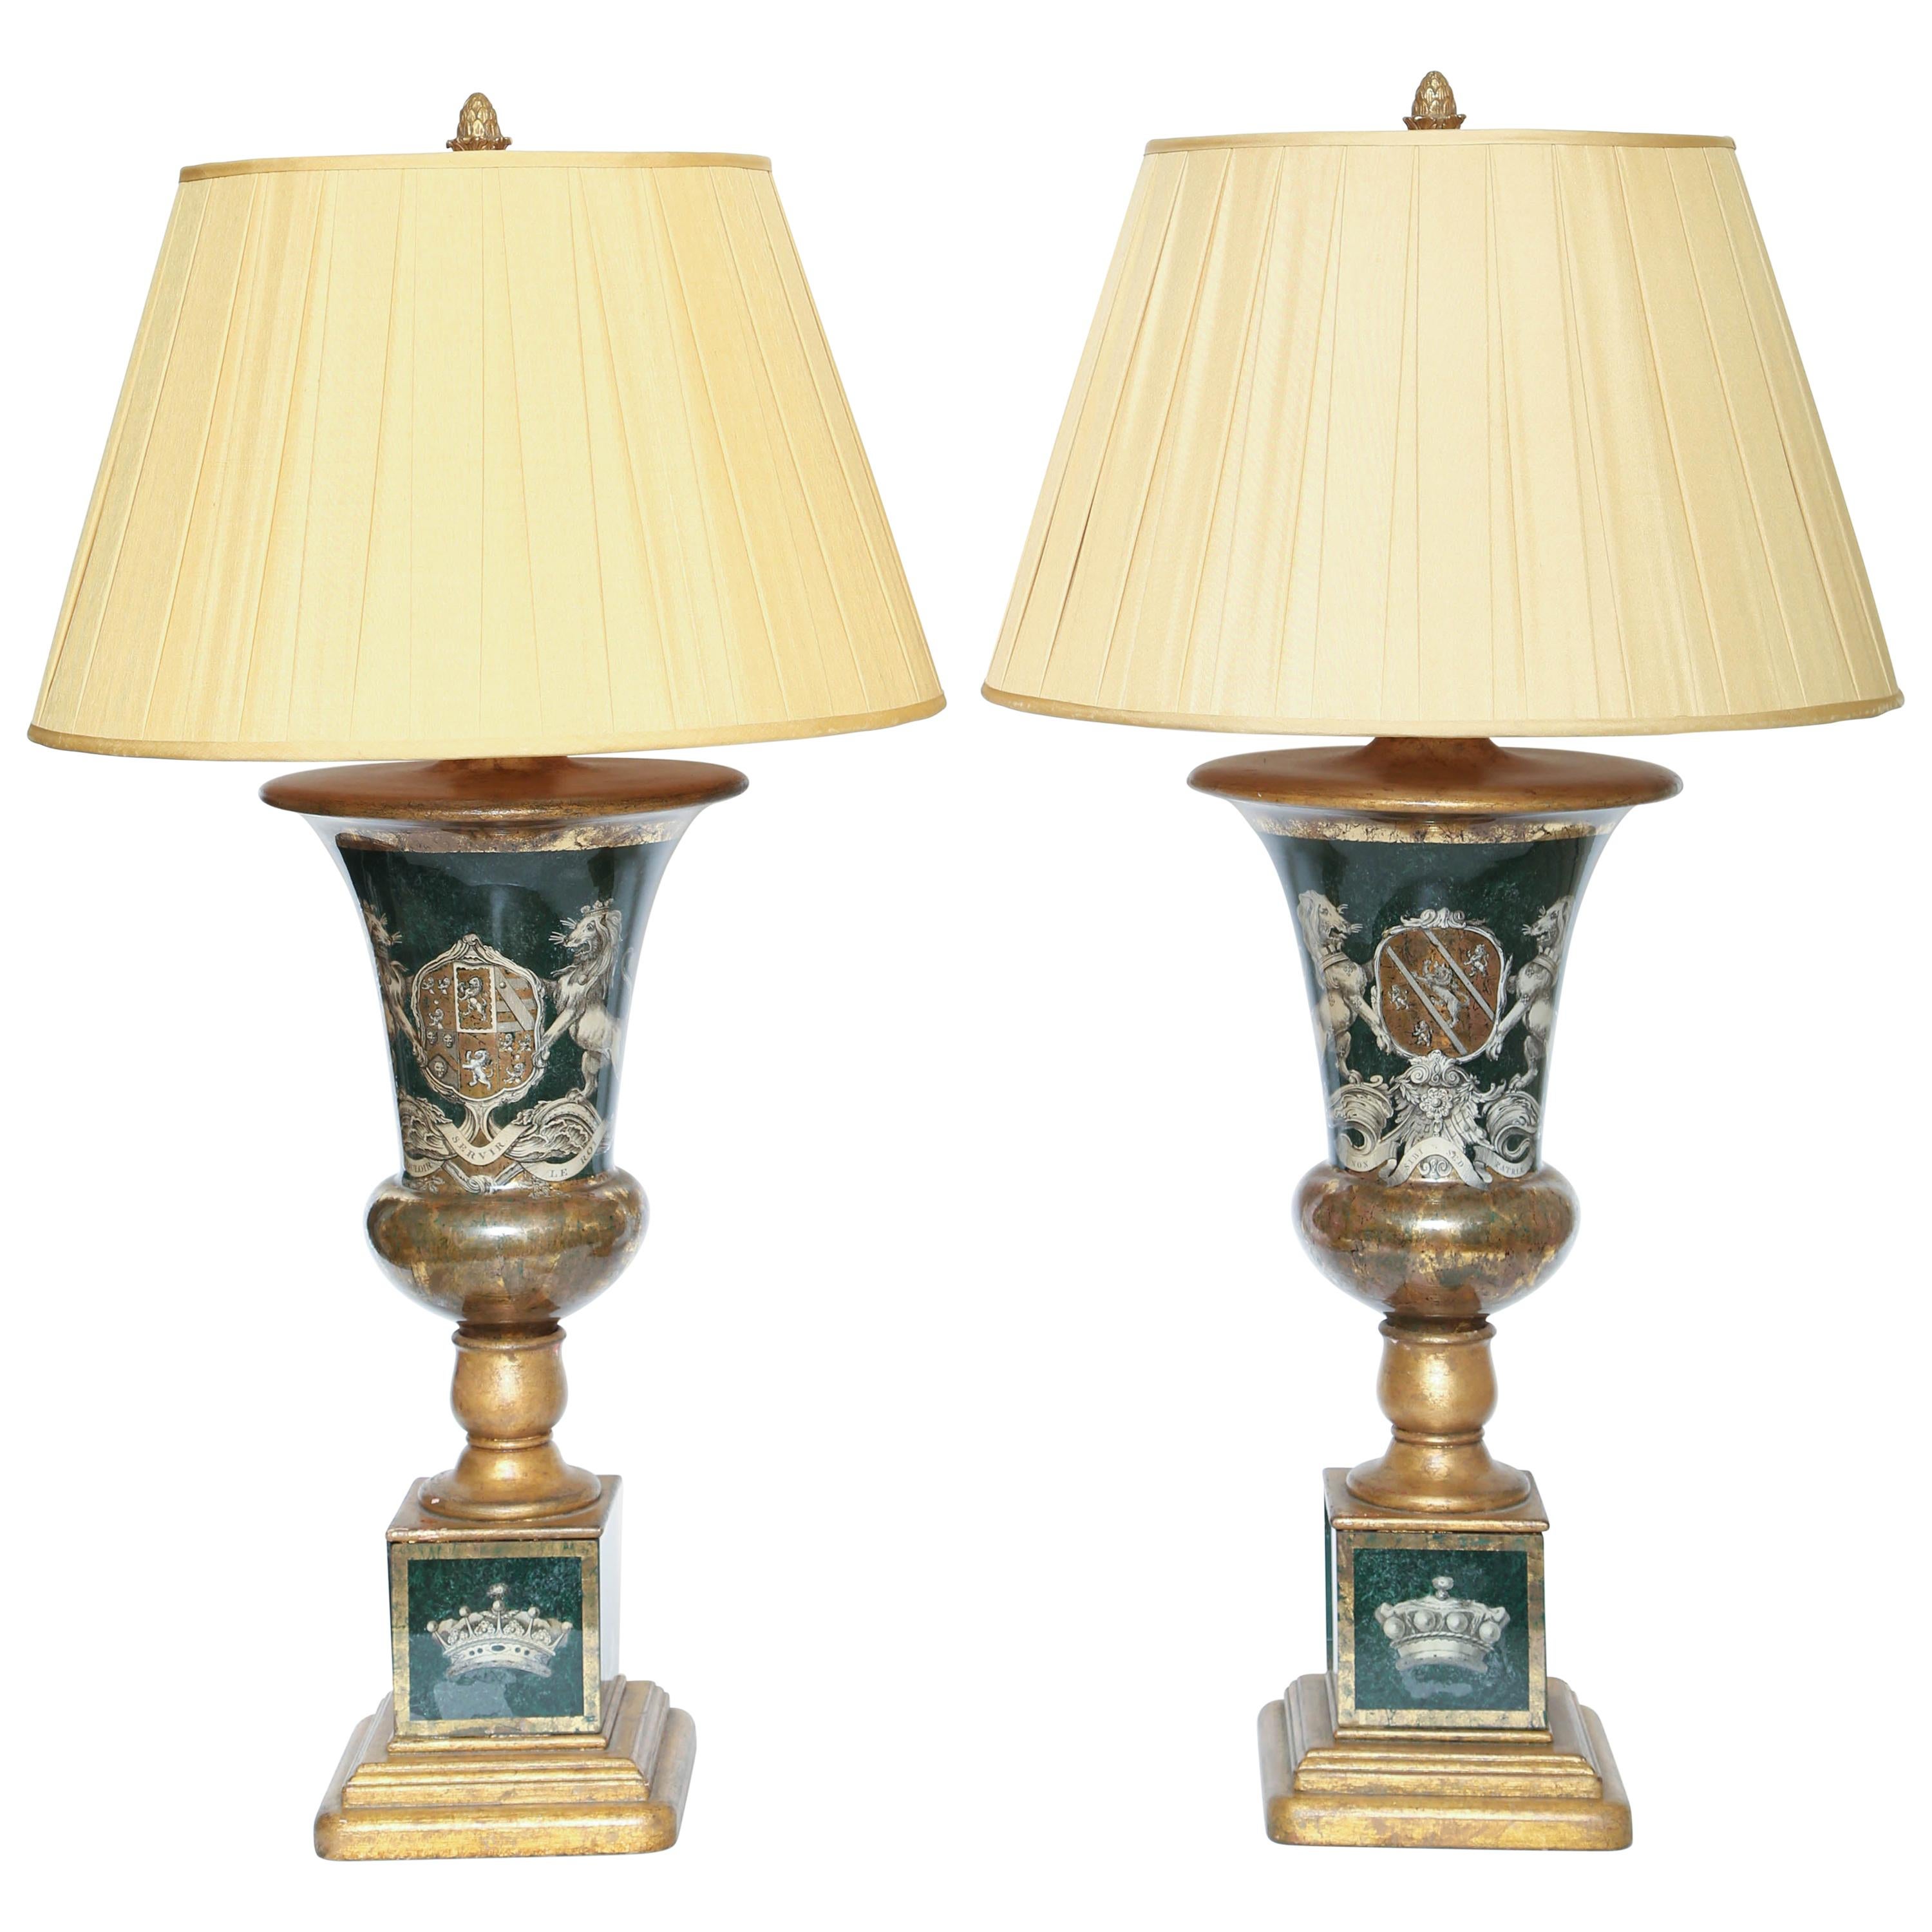 Paire d'étonnantes lampes armoriées Decalcomania vintage